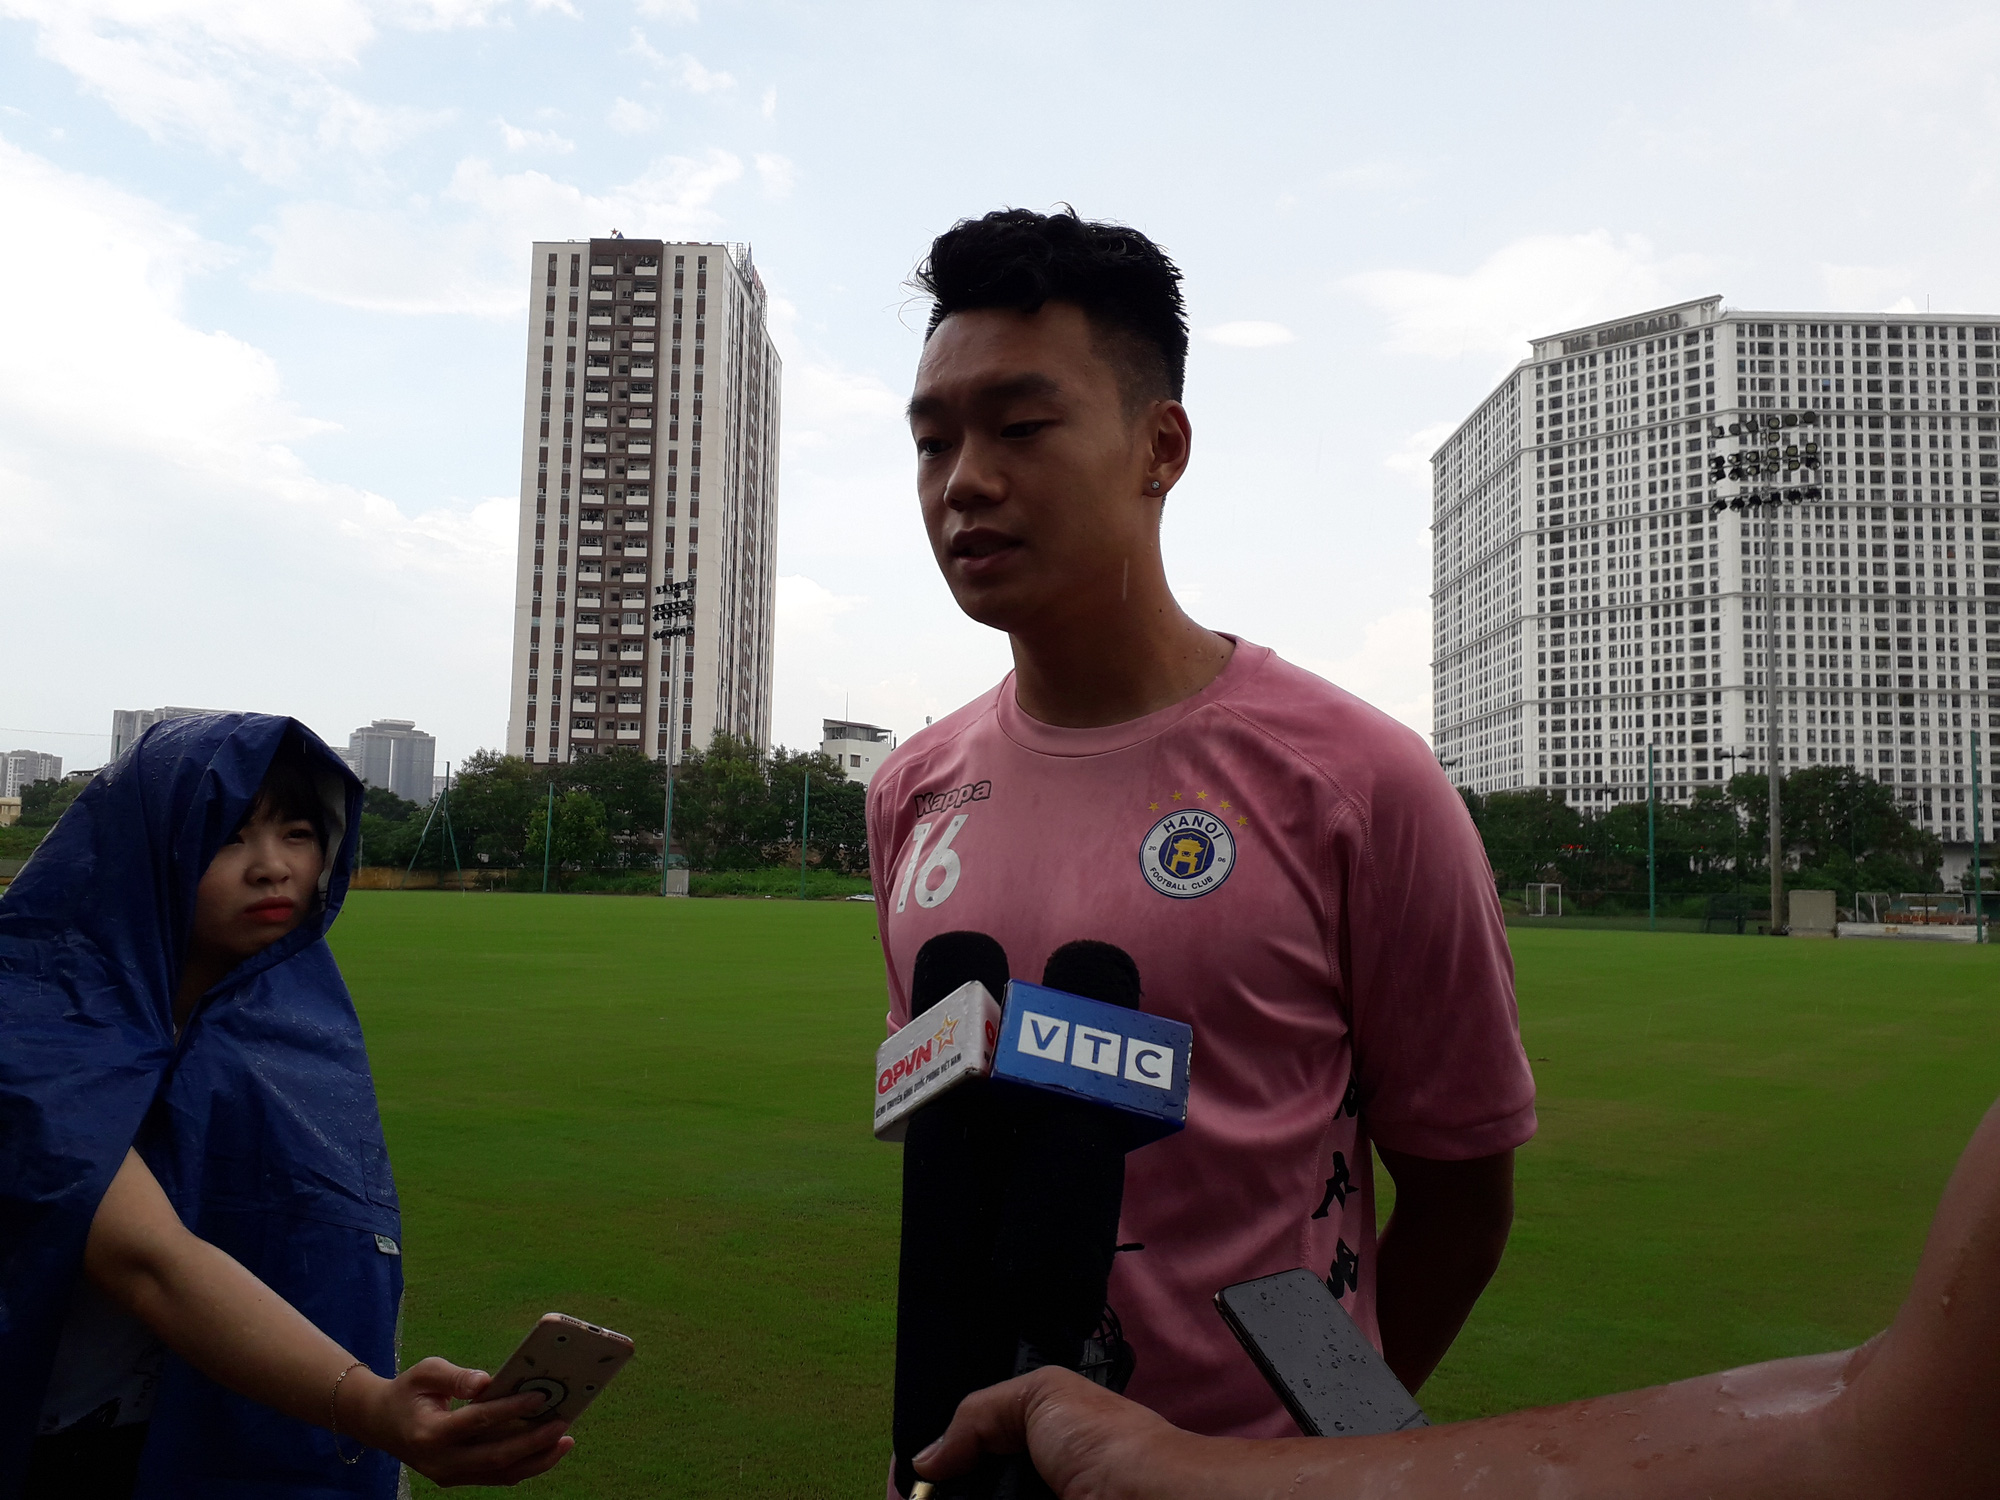 Nguyễn Thành Chung khẳng định có thể chơi tốt cả vị trí trung vệ và tiền đạo theo yêu cầu của ban huấn luyện. Ảnh: Tuệ Minh